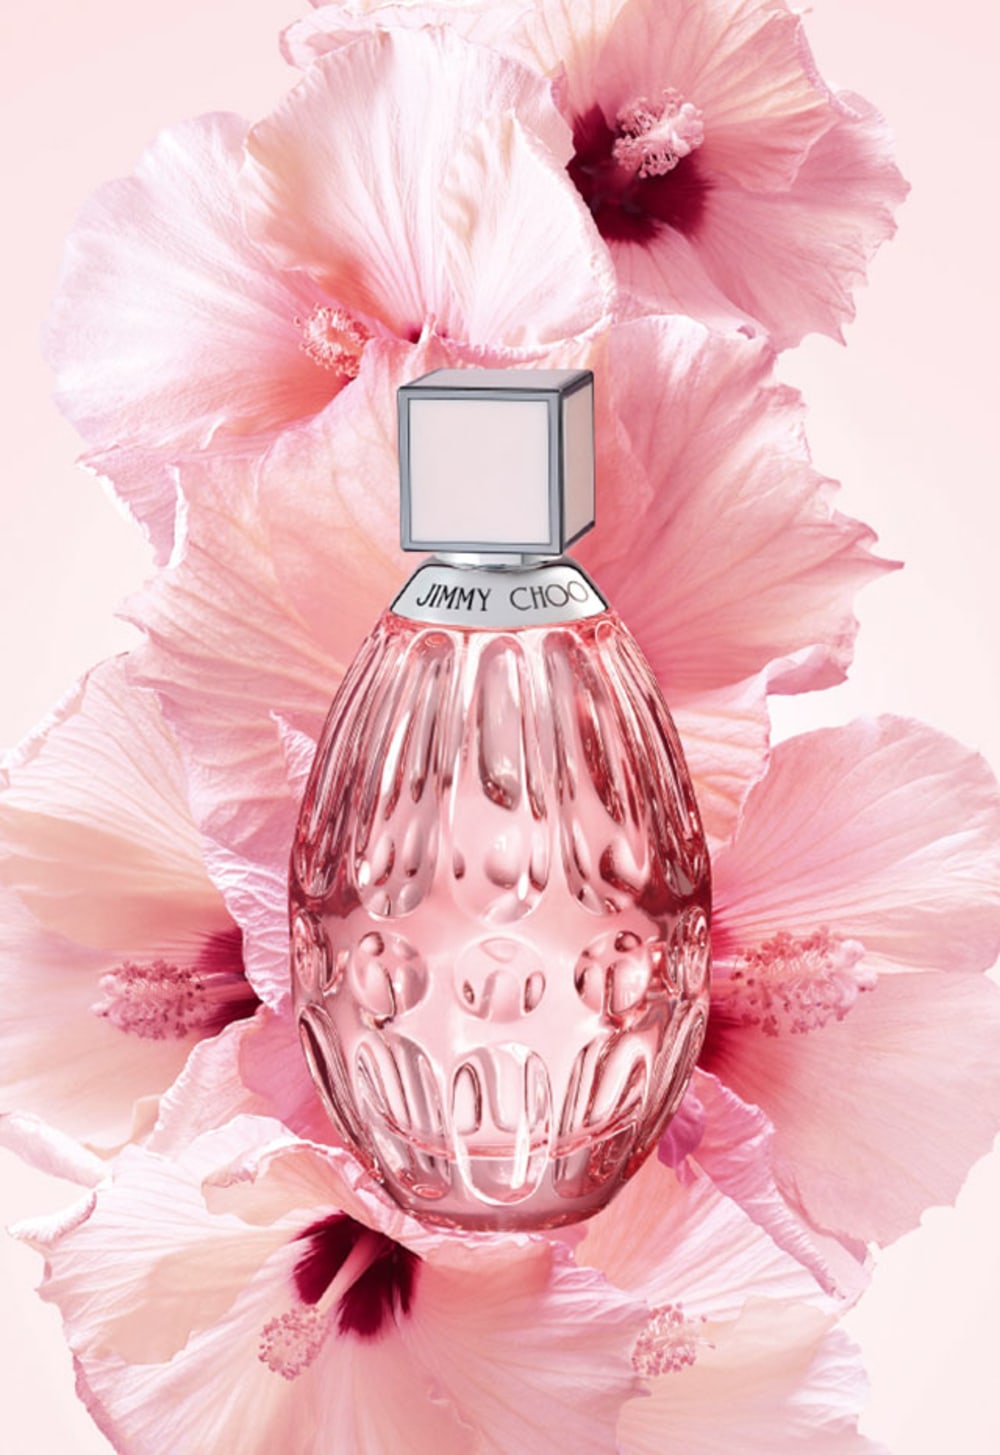 Womens Jimmy Choo Perfume, Fever & Blossom Perfumes